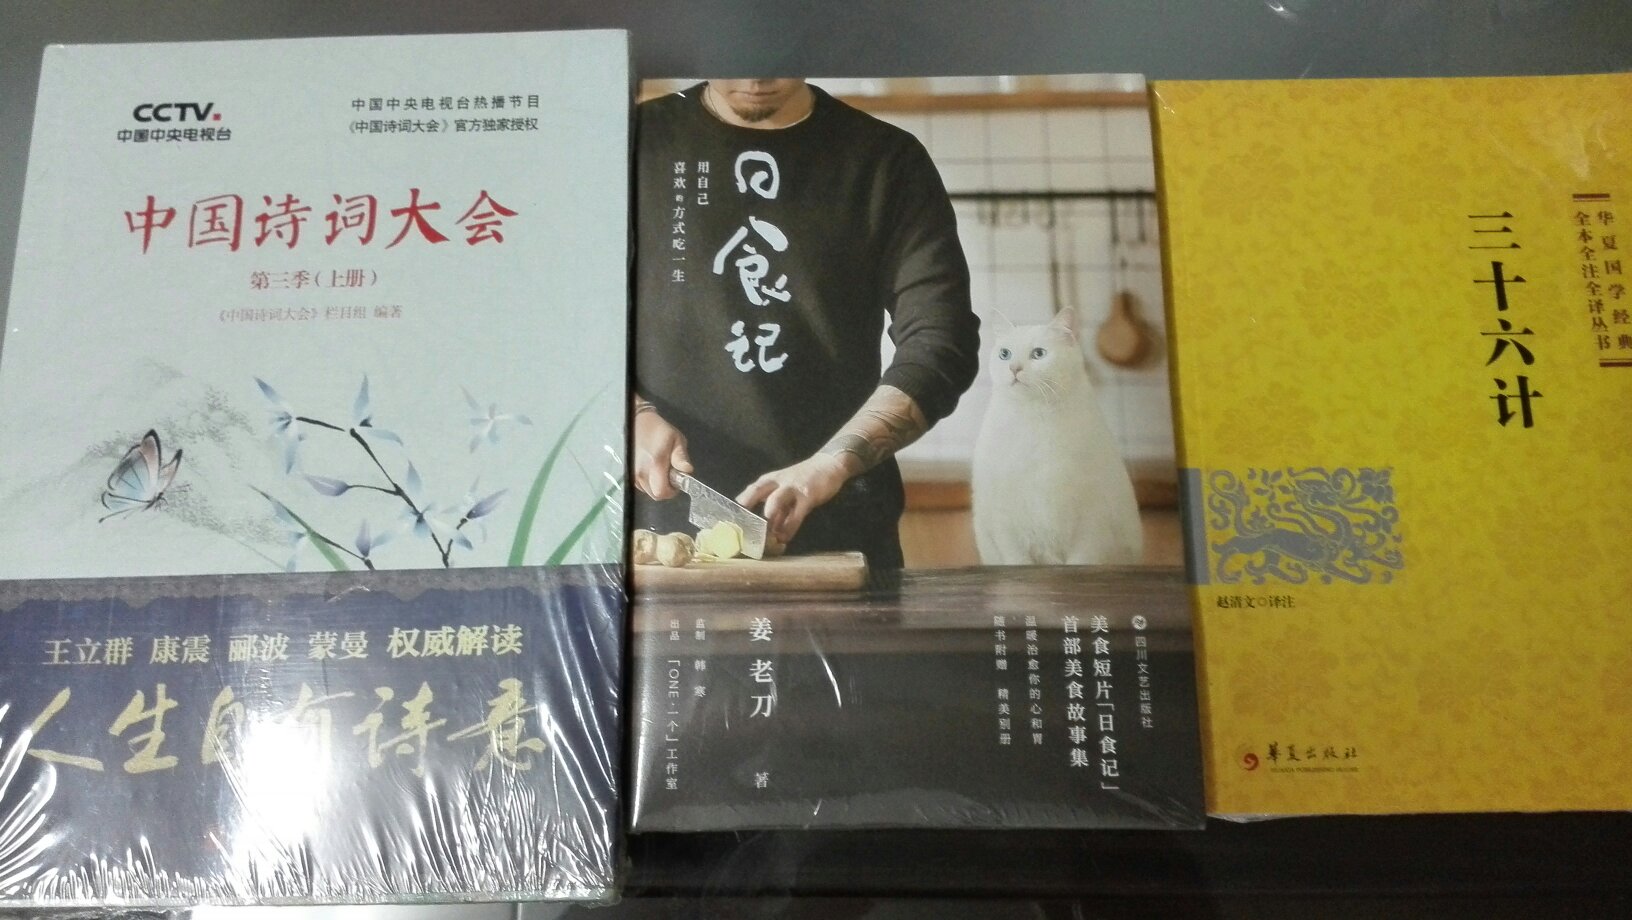 中国诗词大会已经是第三季了，这一直是我喜欢的节目，出书自然也不能落下，收藏起来。